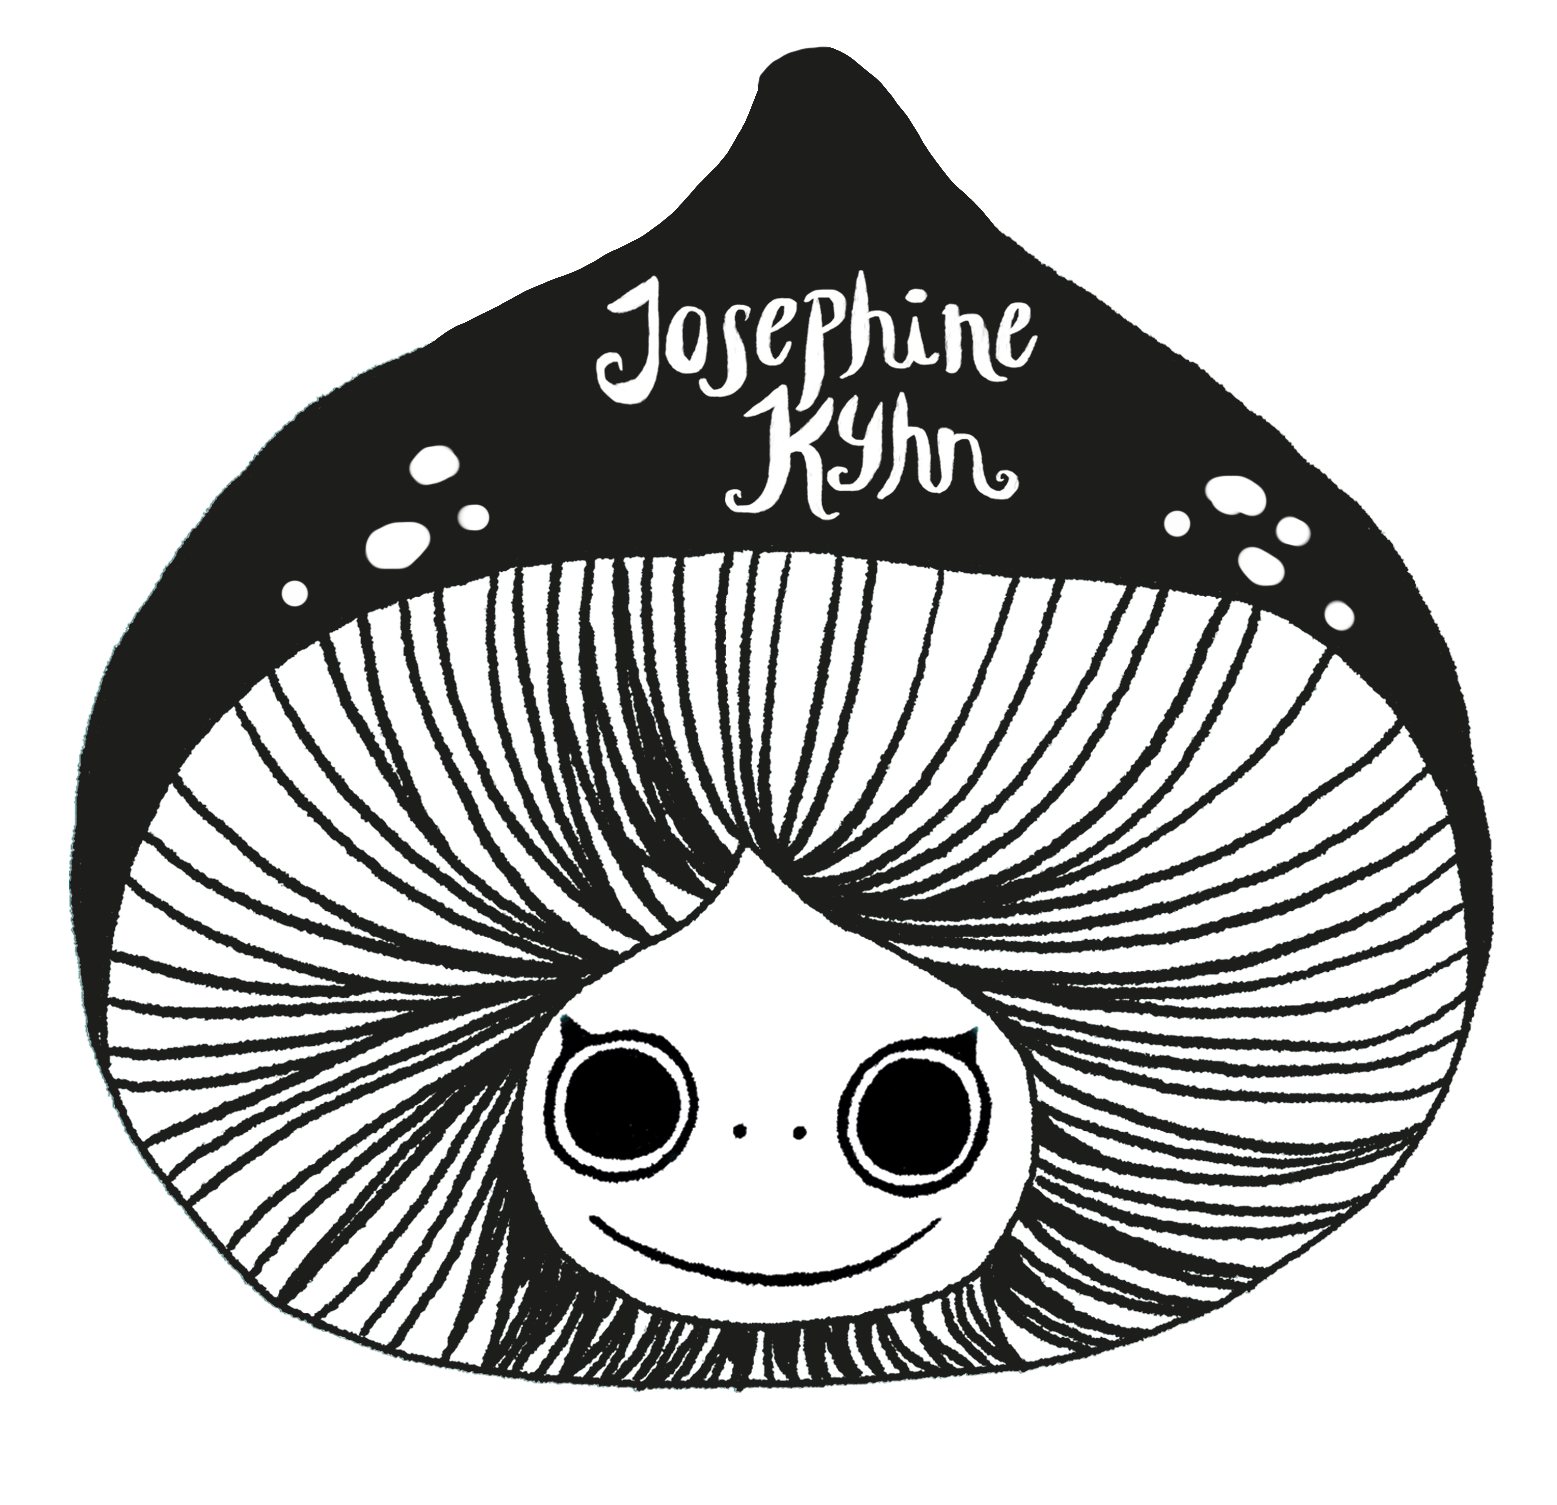 Josephine Kyhn